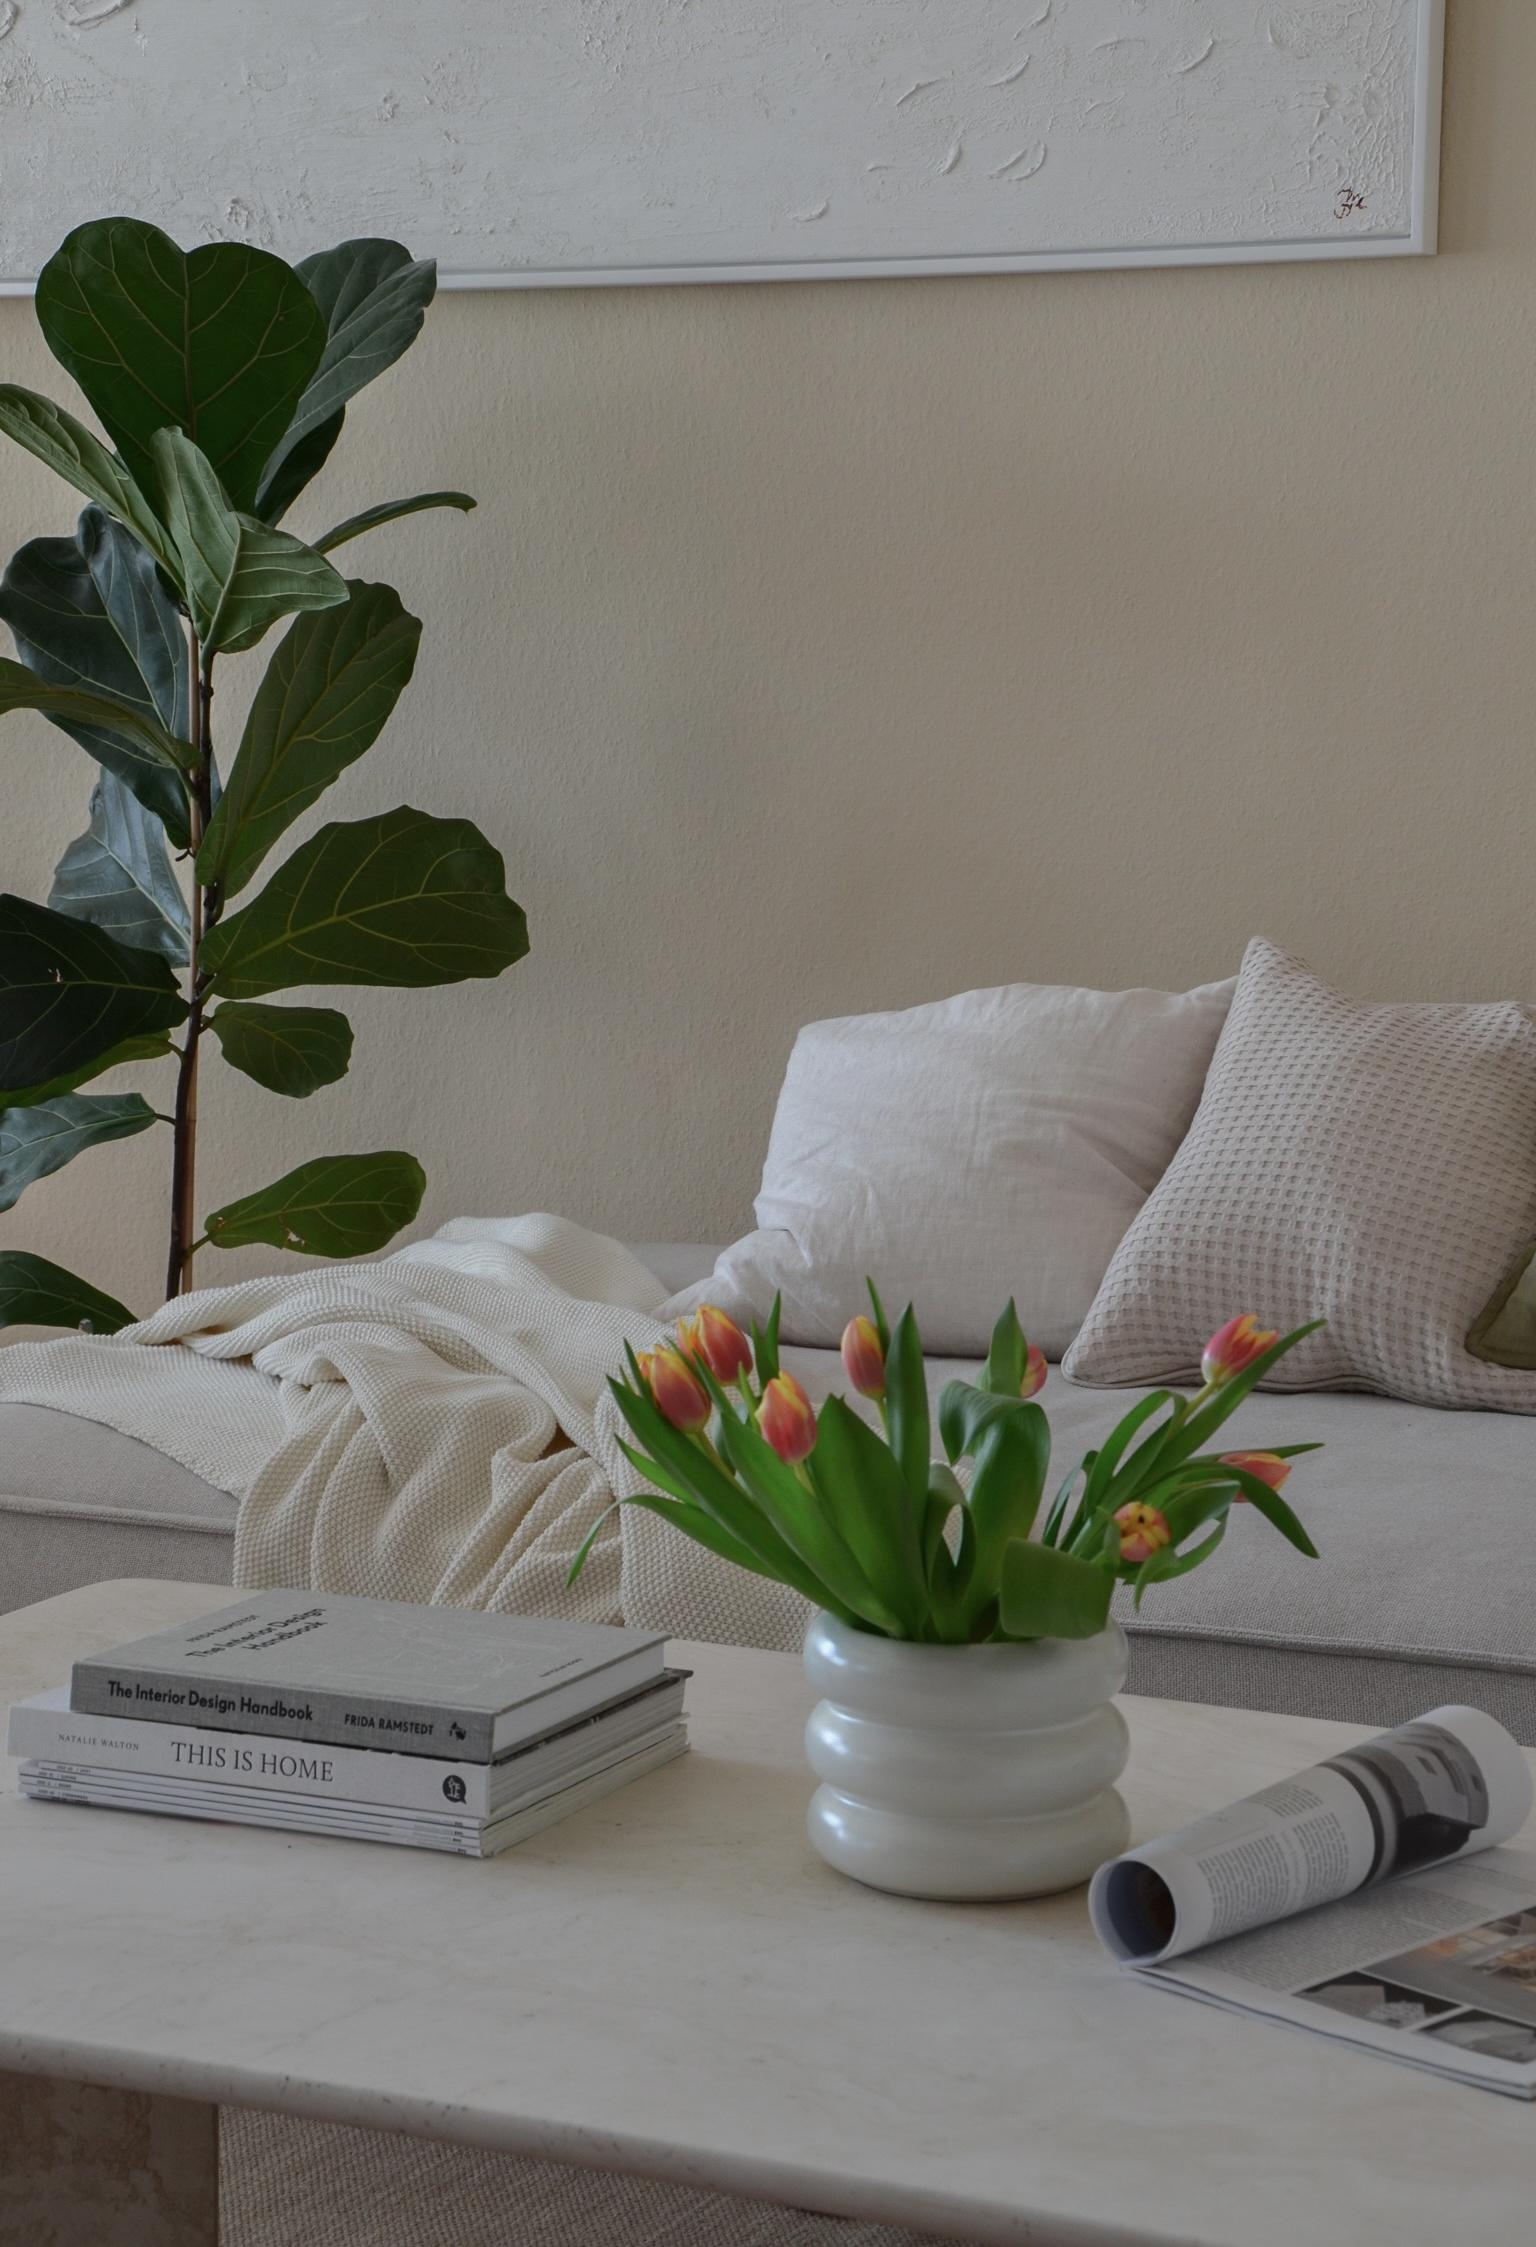 Flower Power 🌷 #wohnzimmer #interiordesign #tulpenliebe #travertintisch #minimalismus #monochromeszuhause